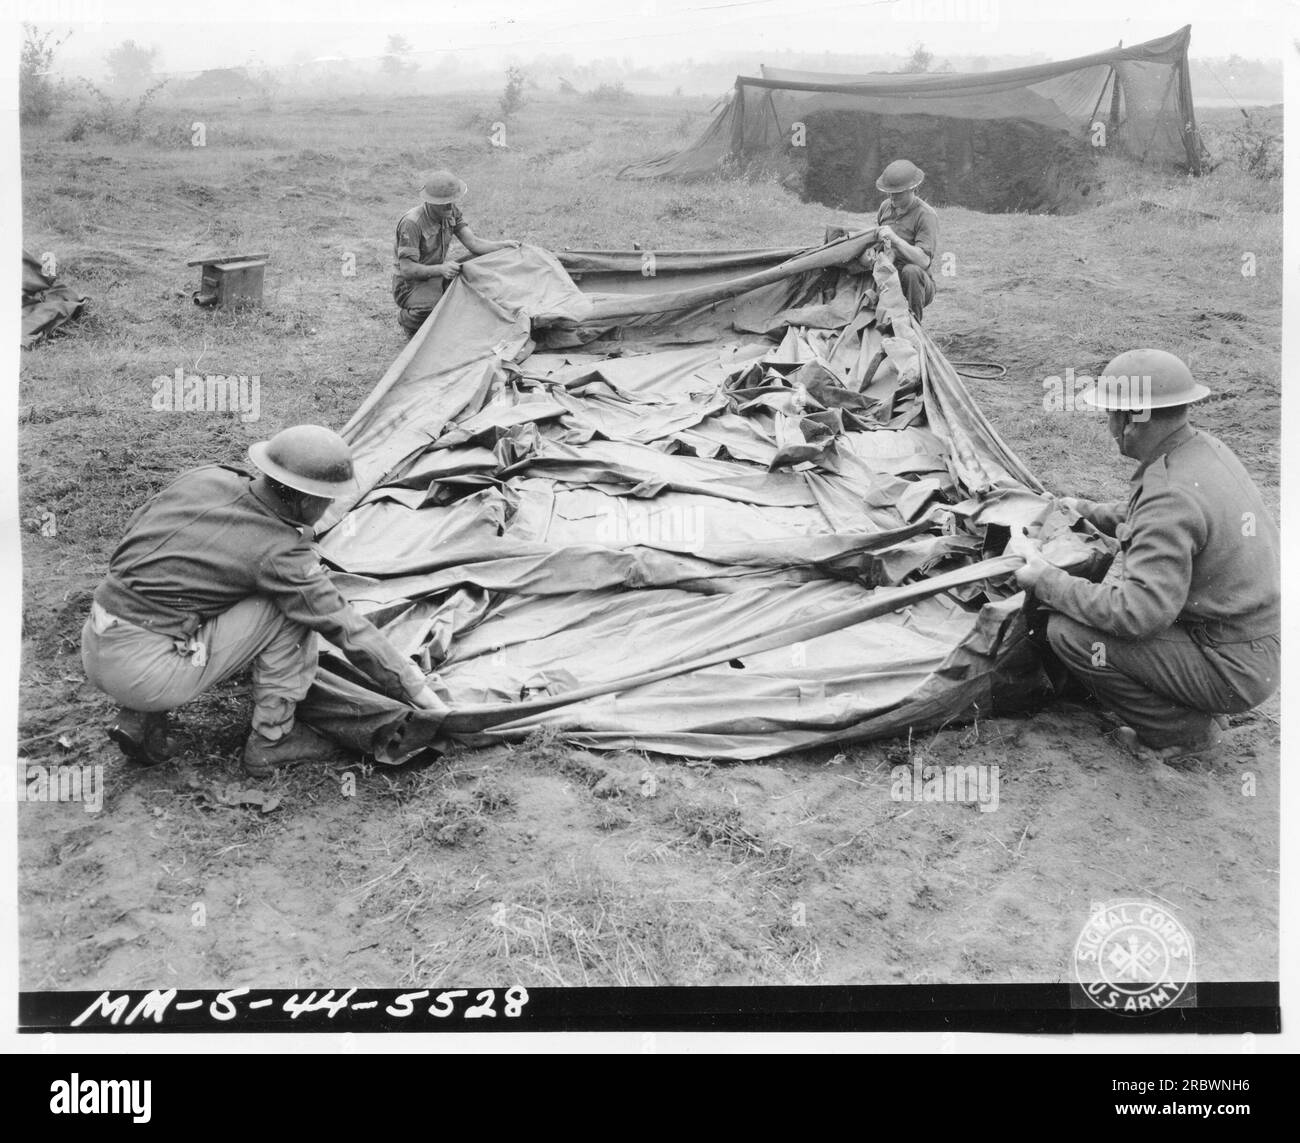 Ein von den Briten während des Ersten Weltkriegs entworfener Dummy-Tank aus Gummi, der beim Einsatz aufgeblasen wurde. Foto: Mm-8-44-5528 SIGNAL FORP SARM. Stockfoto